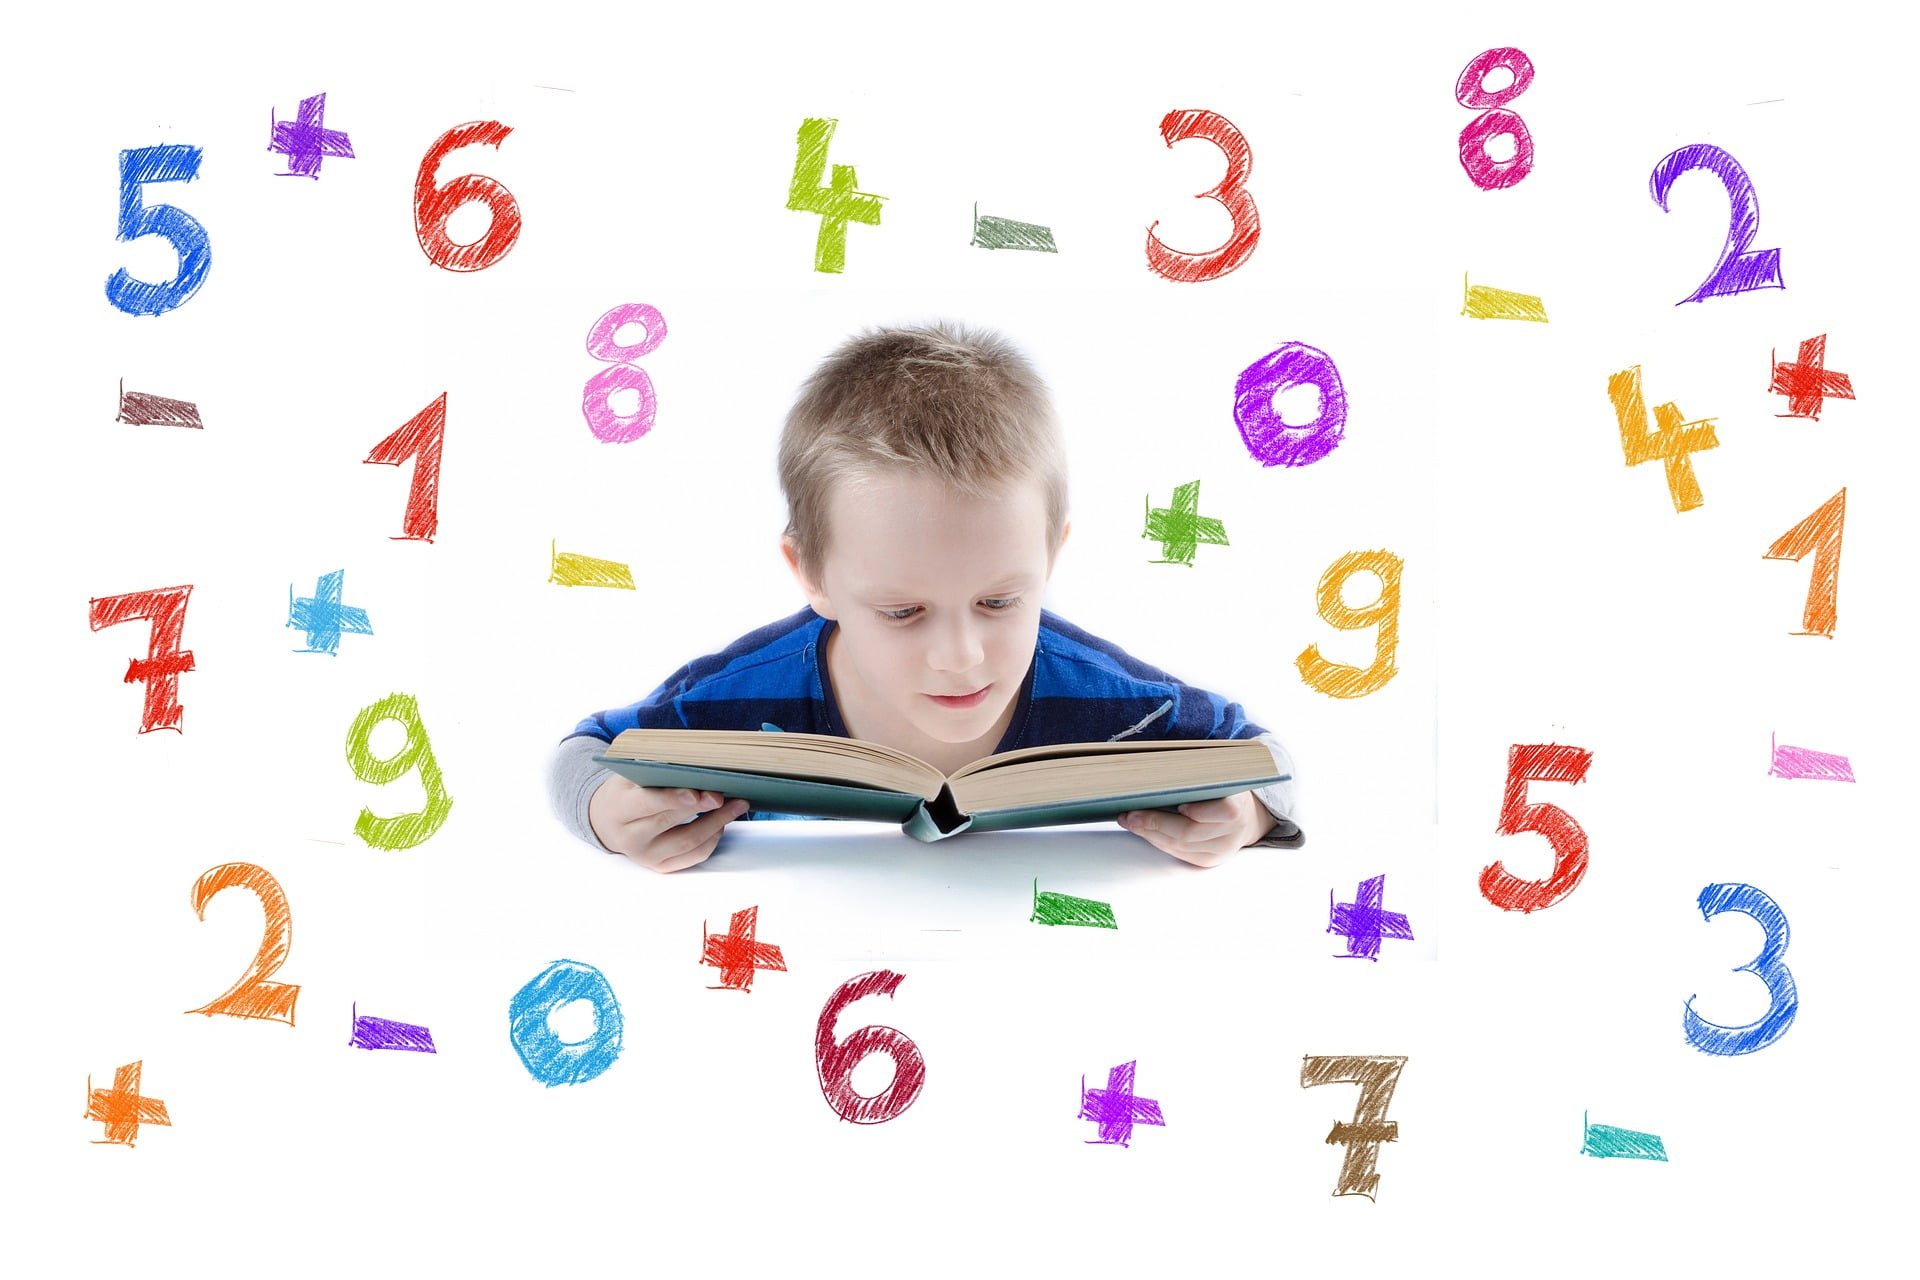 Chłopiec, który czyta książkę, wokół niego cyfry od 1 do 9 i znaki +, -